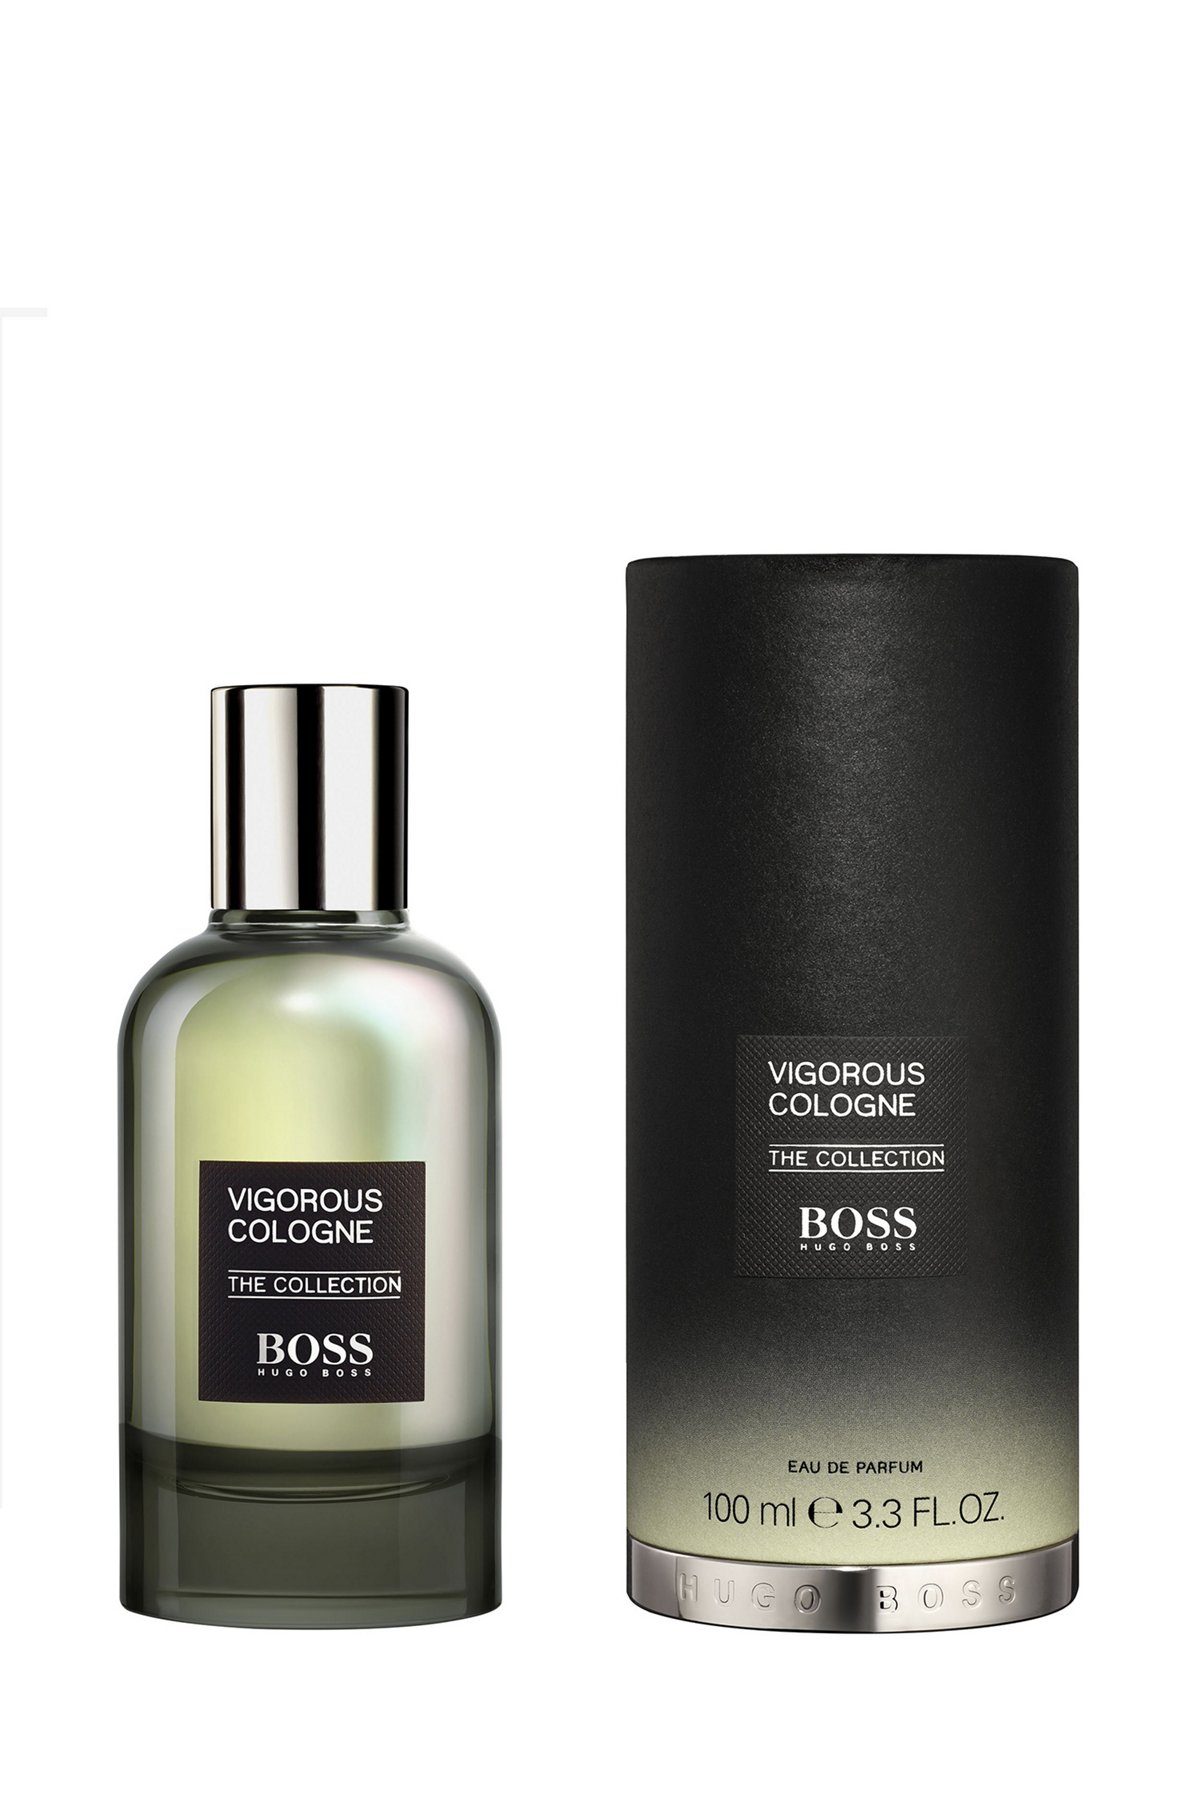 BOSS The Collection Vigorous Cologne Eau de Parfum 100 ml, Assorted-Pre-Pack